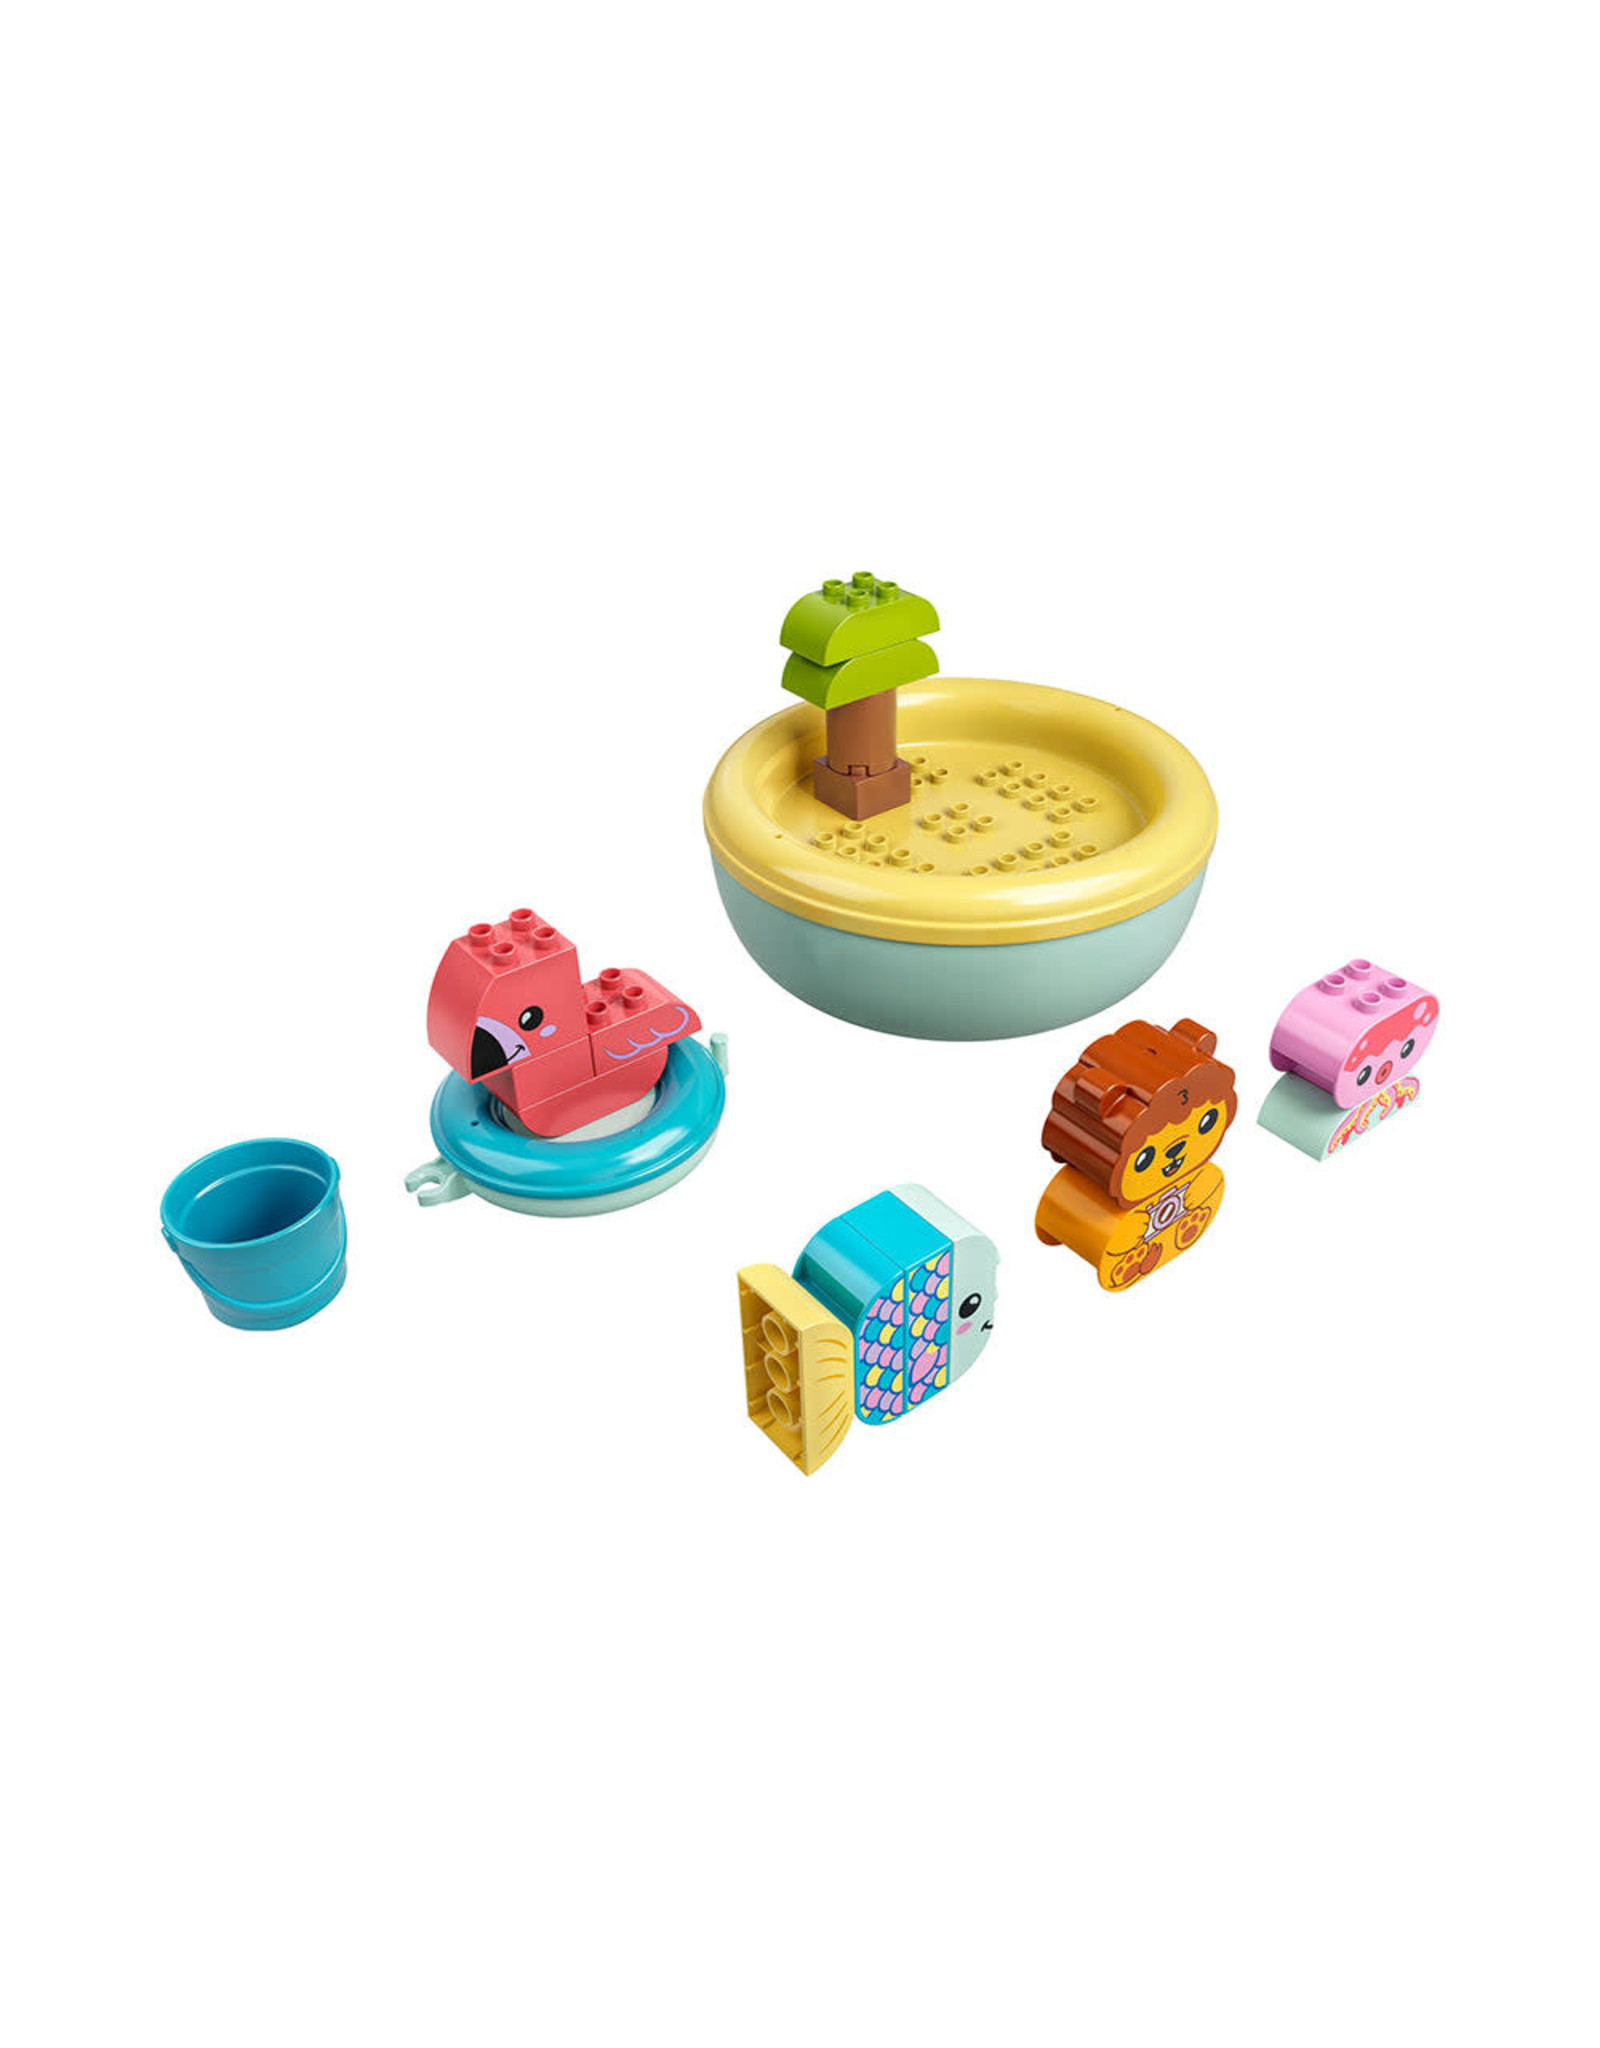 LEGO DUPLO My First Bath Time Fun: Floating Animal Island 10966 (20 Pieces)